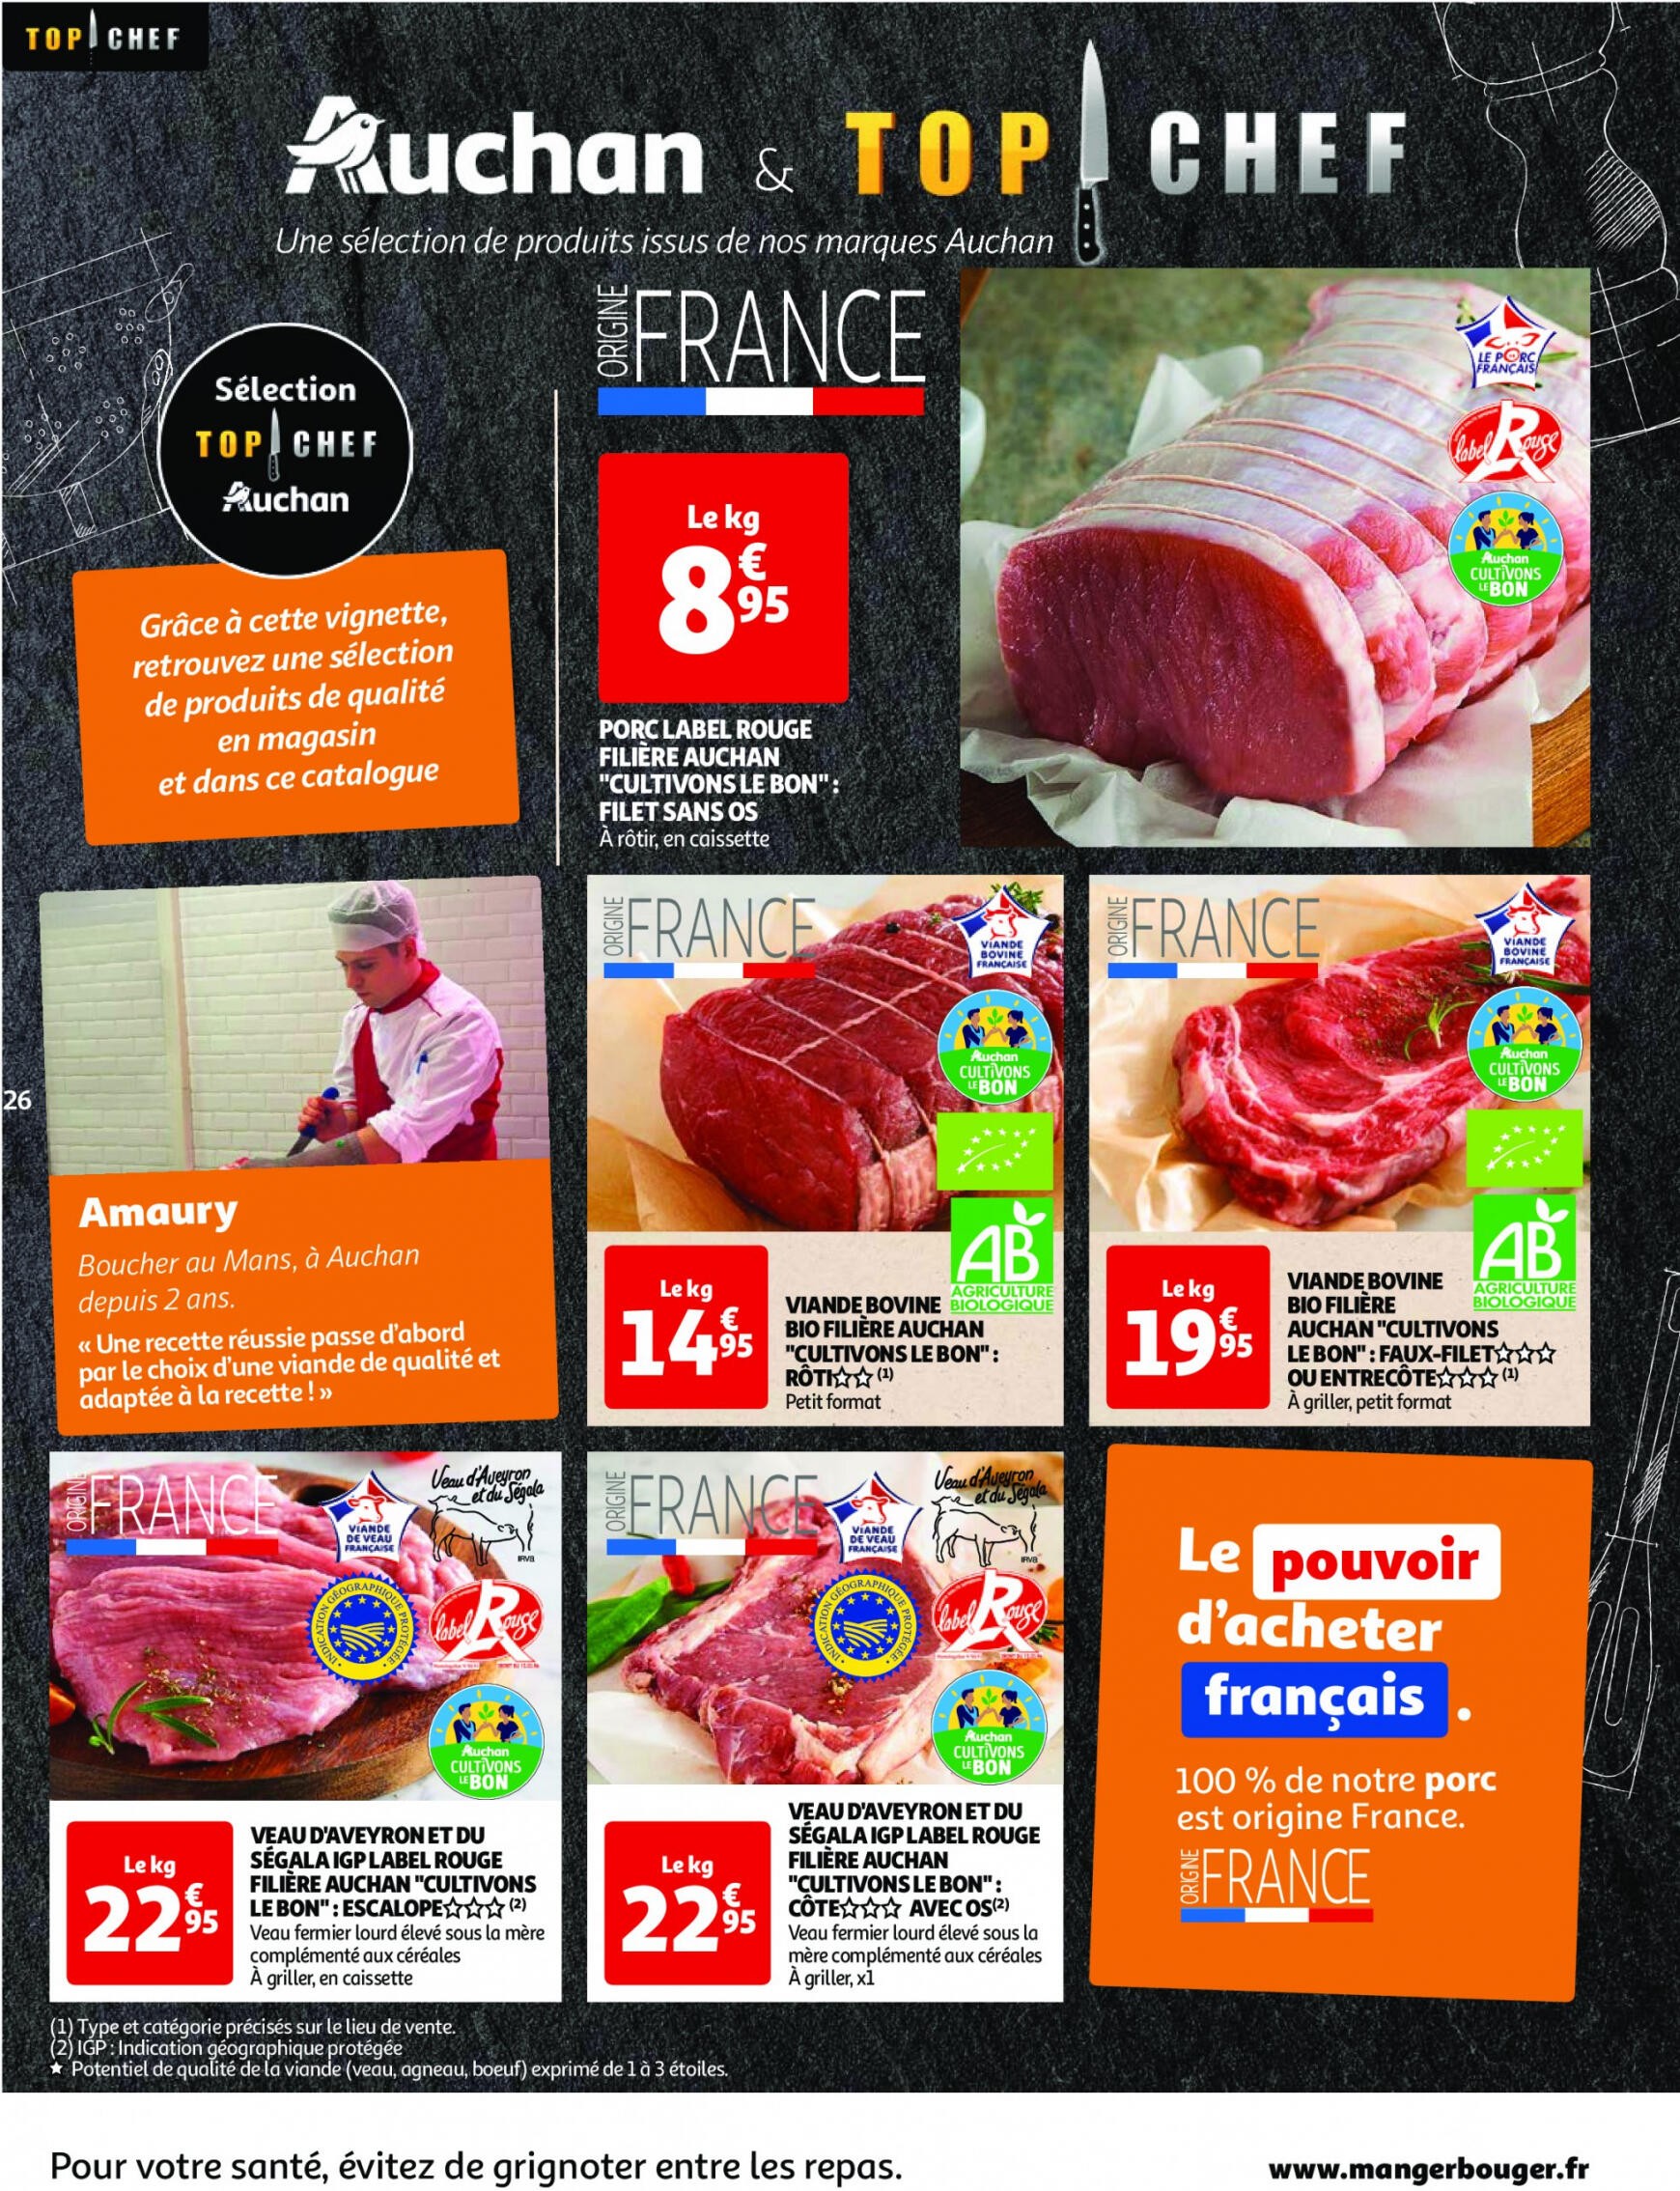 auchan - Prospectus Auchan actuel 30.04. - 06.05. - page: 26